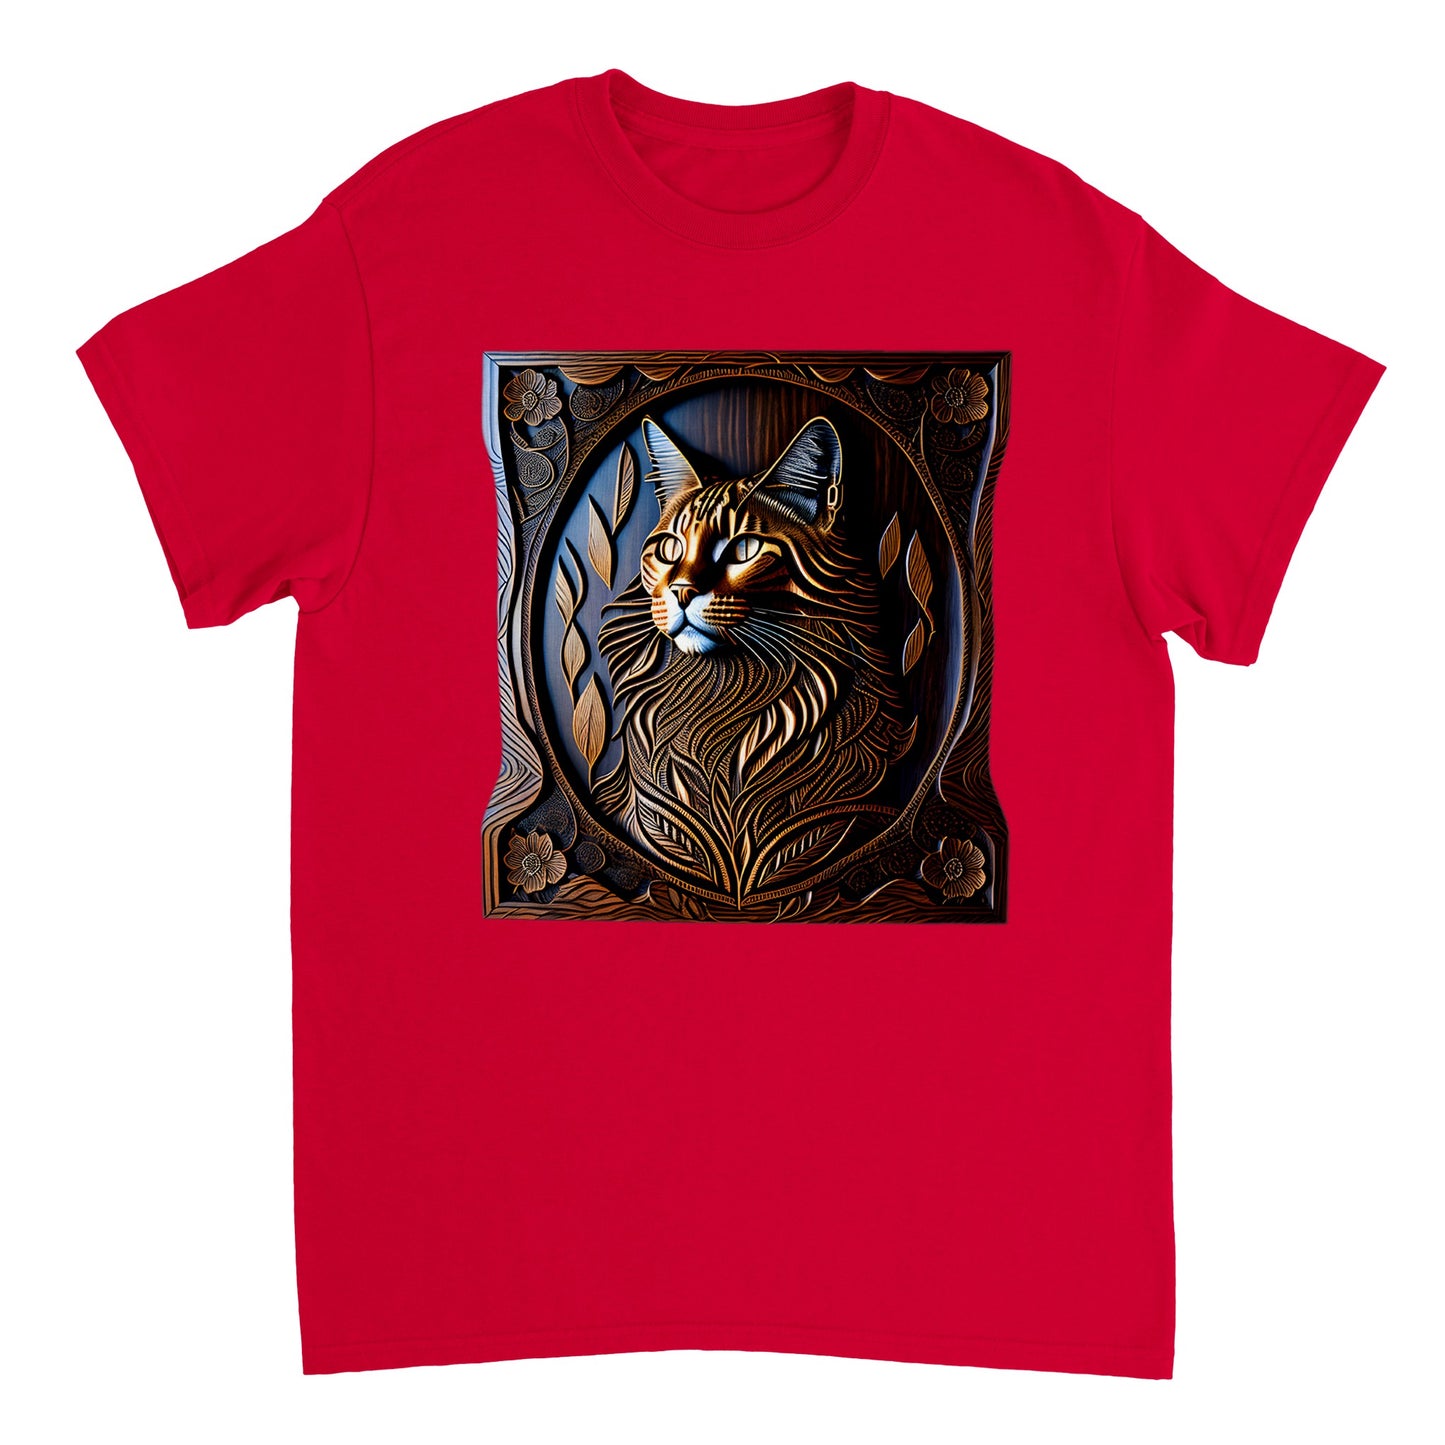 3D Wooden Animal Art - Heavyweight Unisex Crewneck T-shirt 71